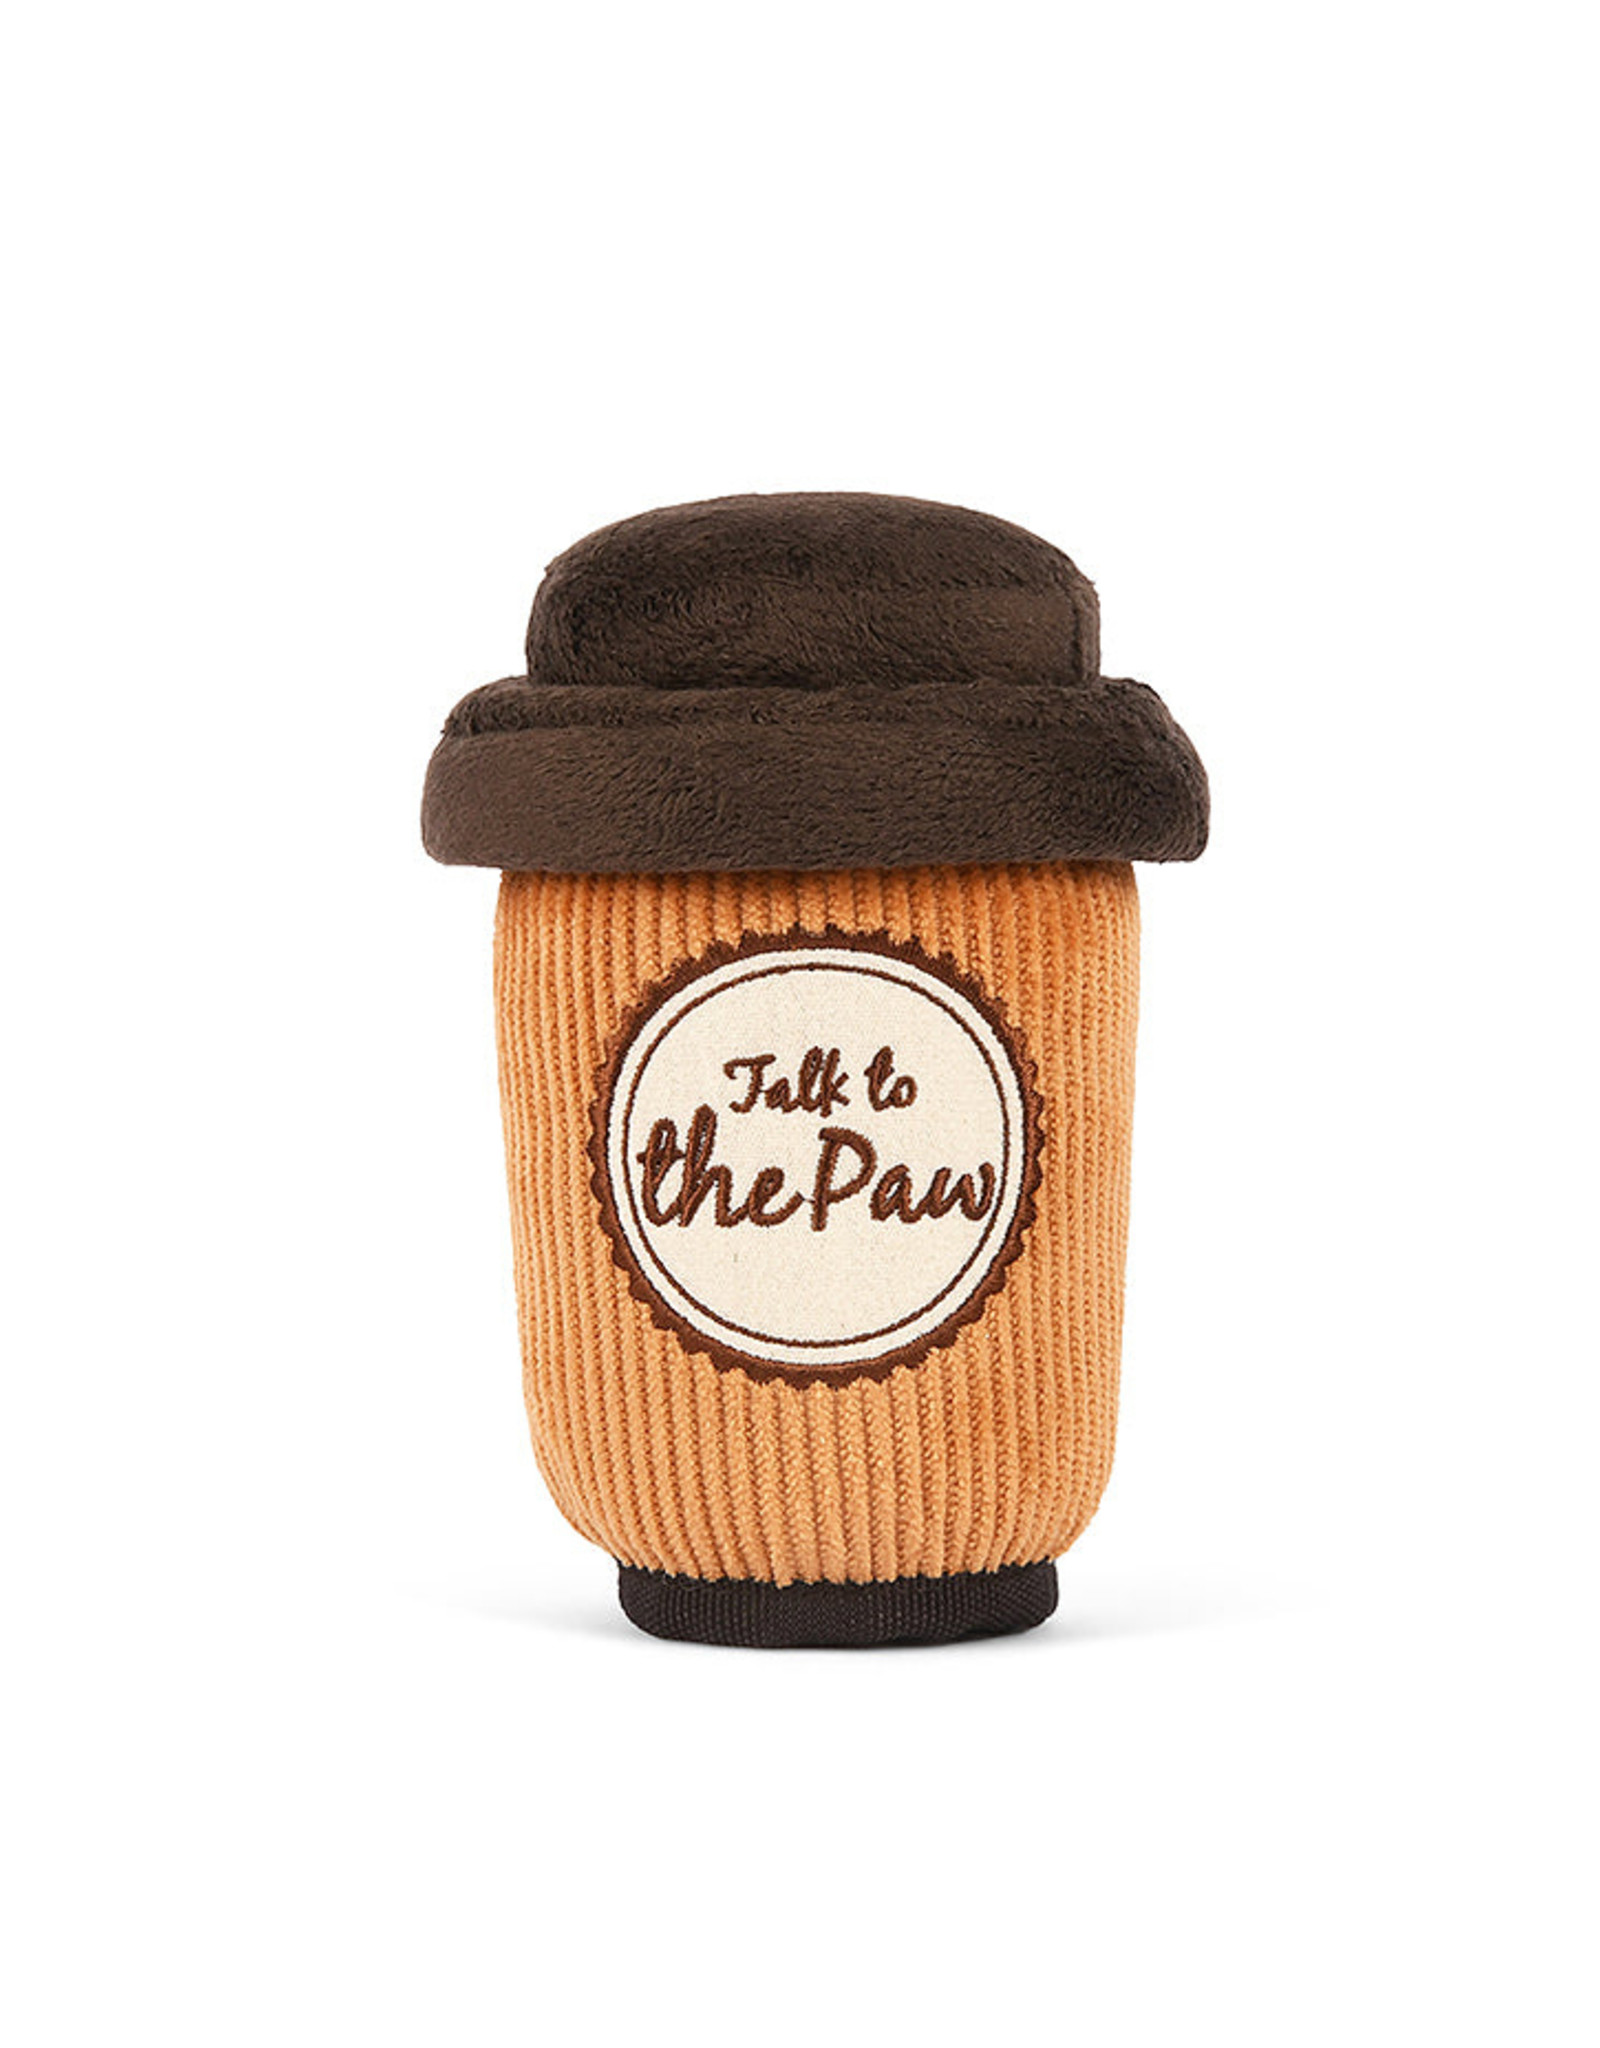 P.L.A.Y. Pup Cup Café Java